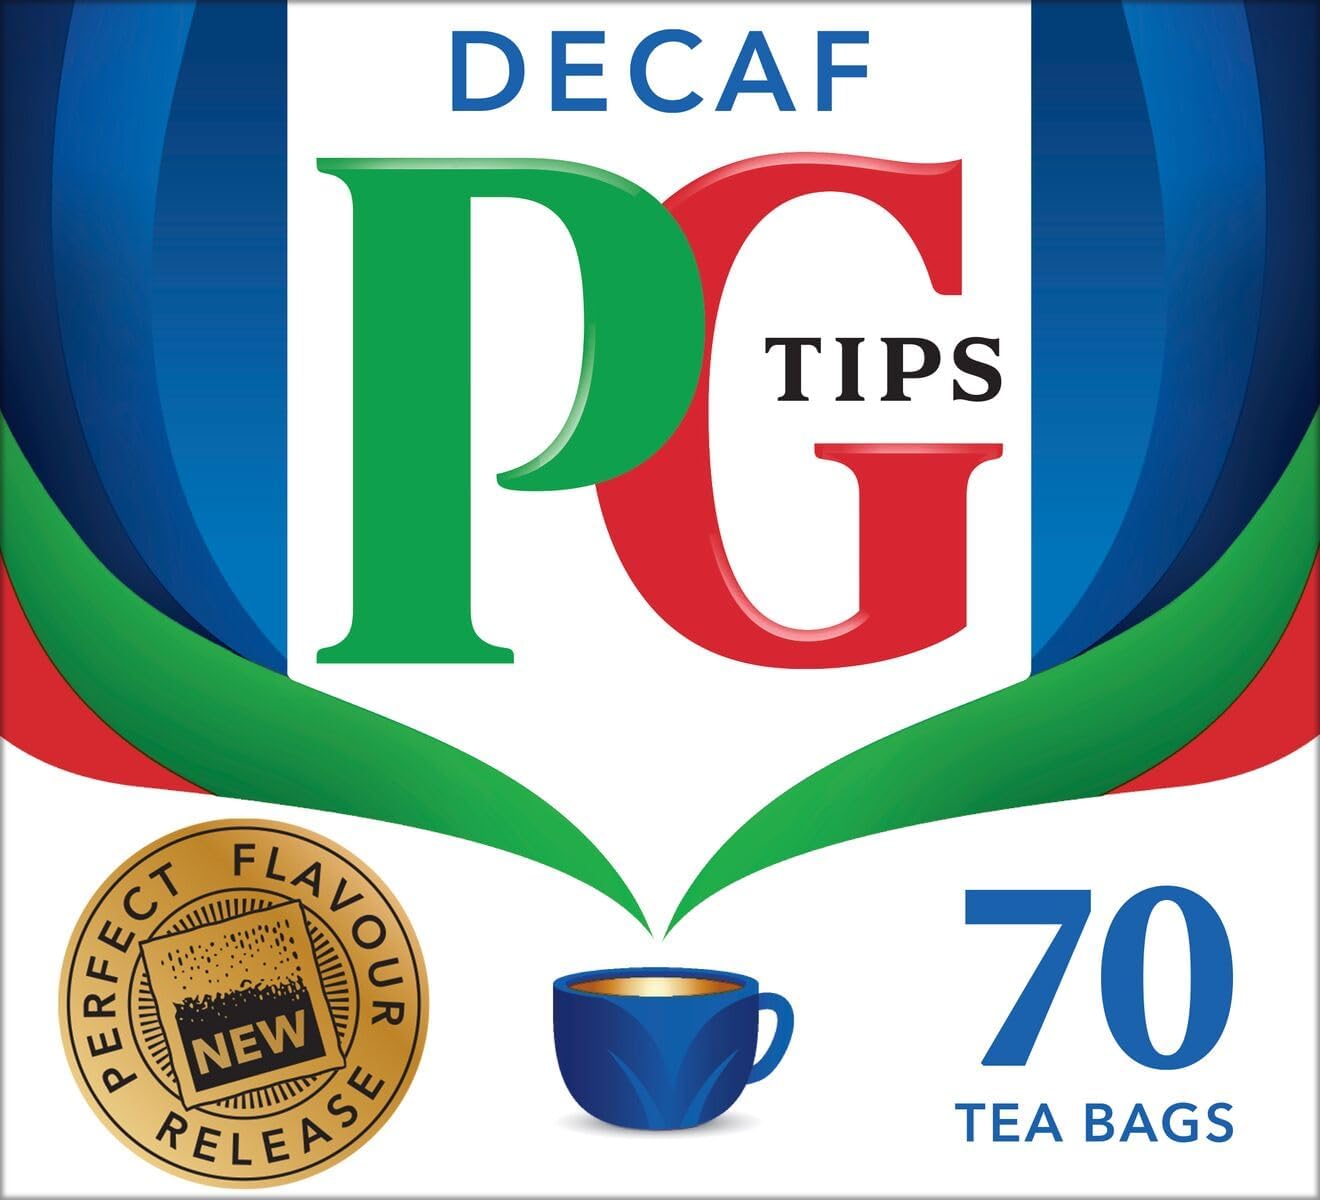 PG Tips - Decaf - 70 Tea Bags